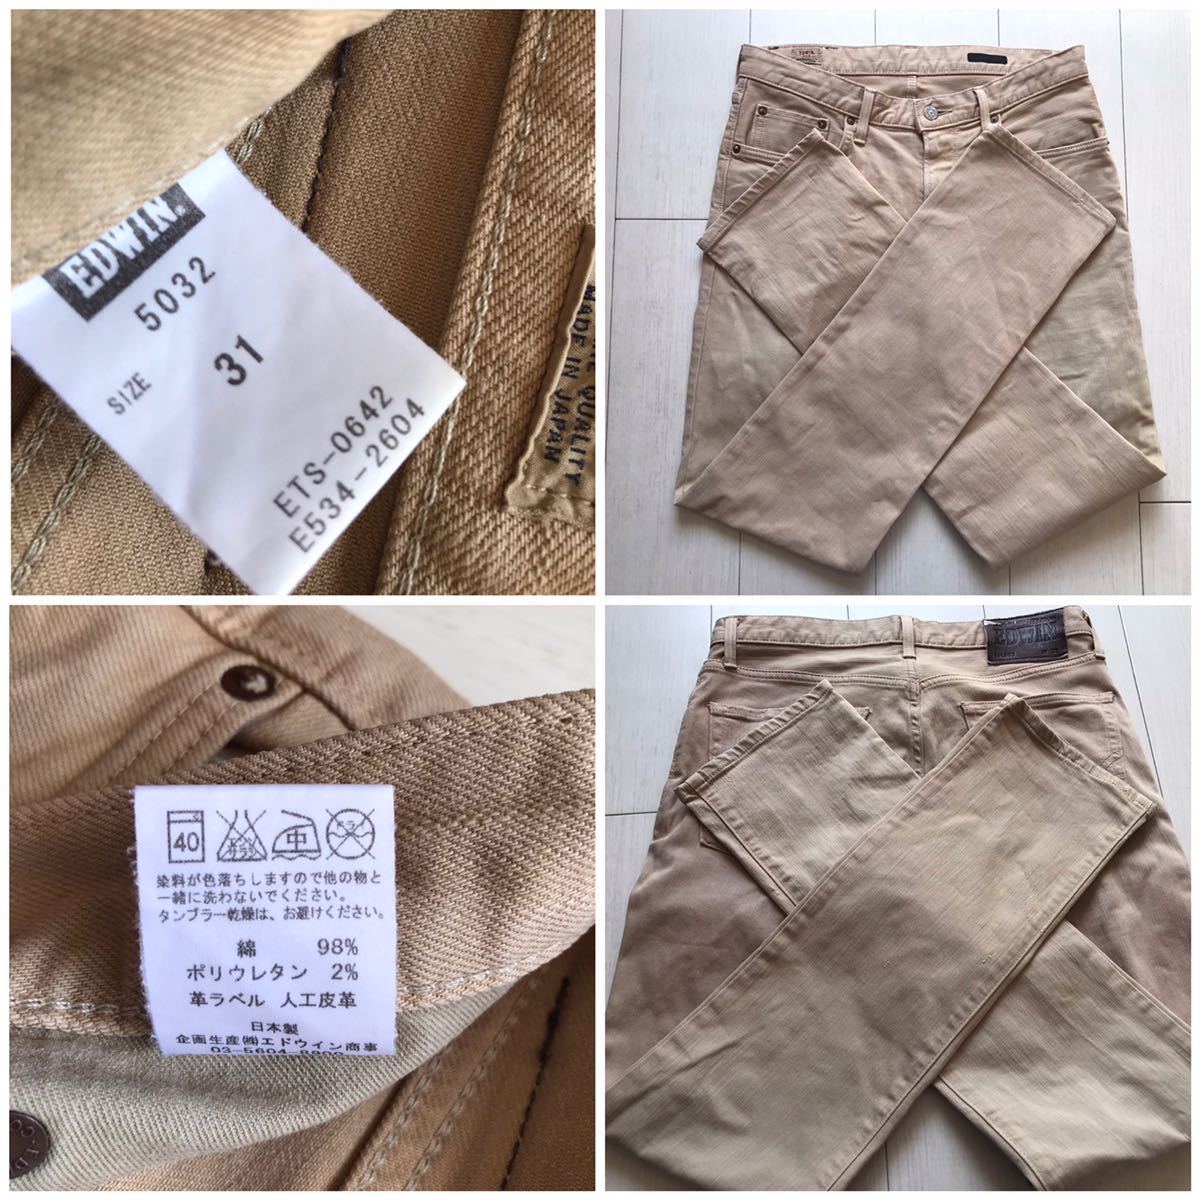 [ быстрое решение ]W31 Edwin EDWIN 5032 постоянный narrow стрейч цвет джинсы оттенок бежевого цвет сделано в Японии кромка цепь стежок specification NARROW